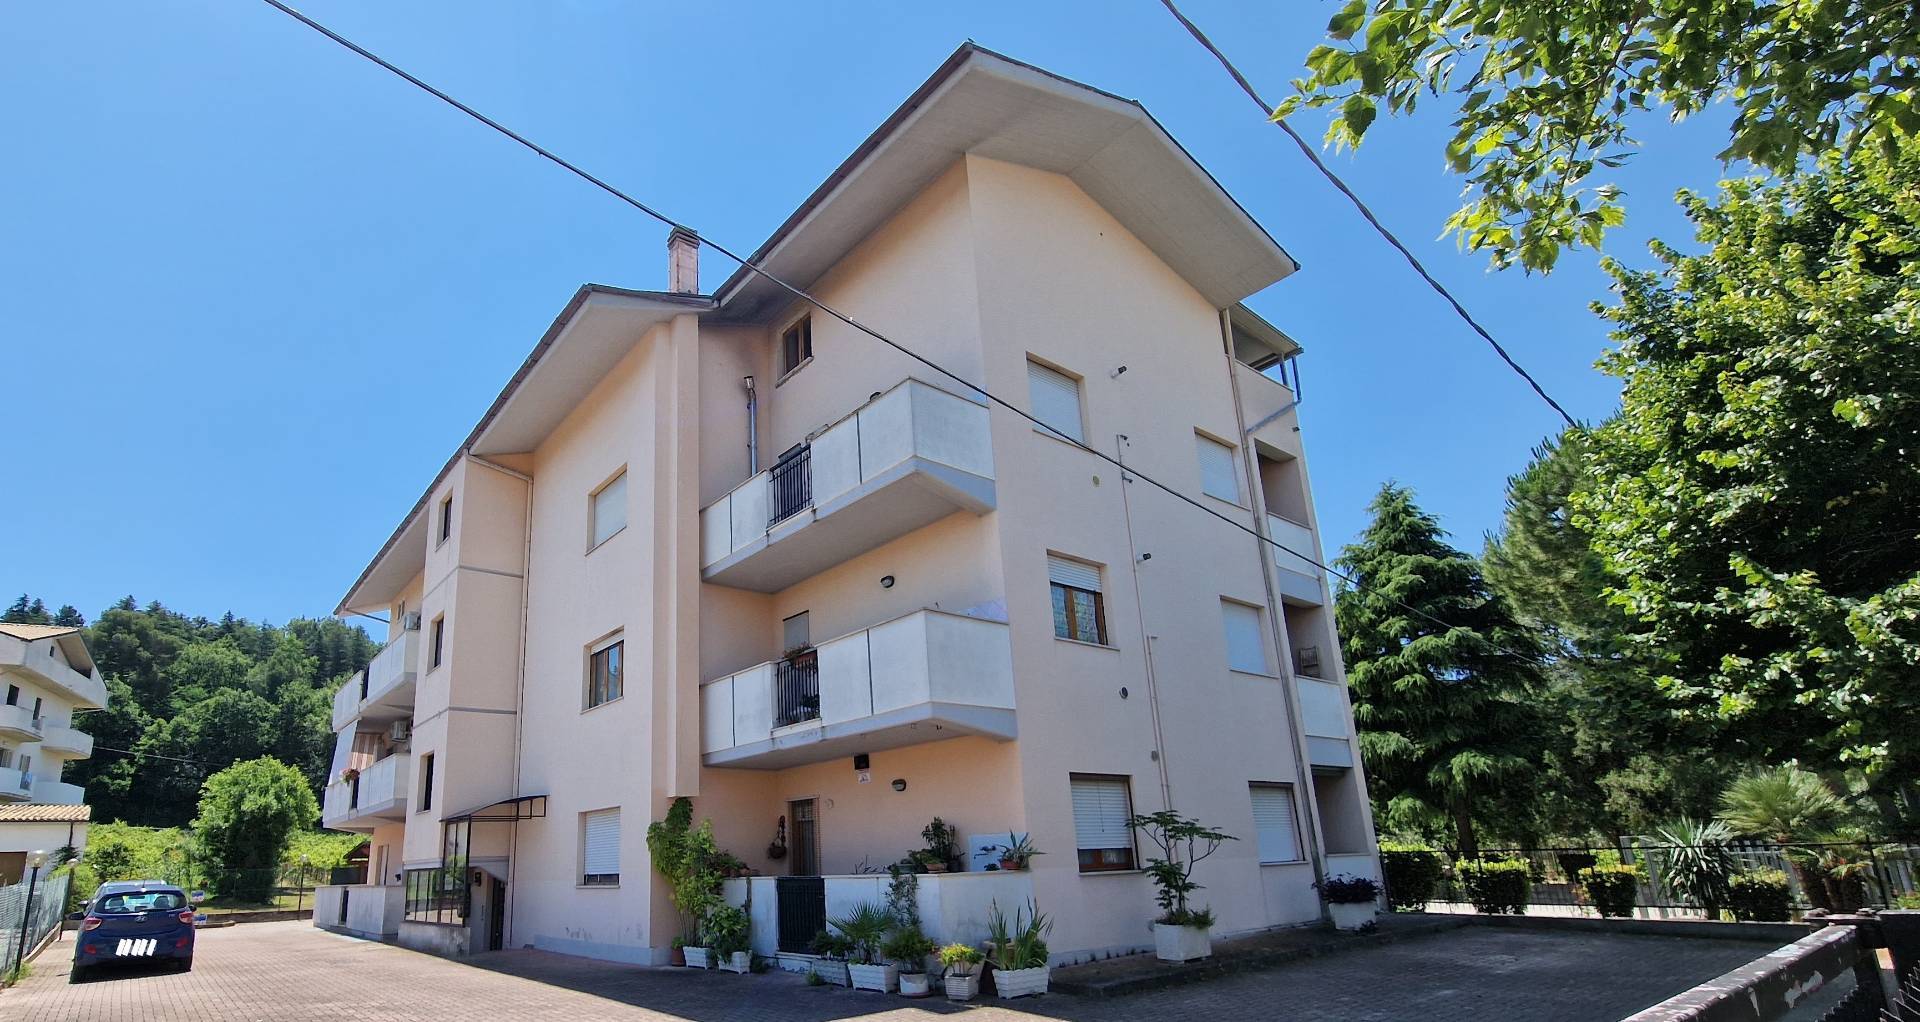 Appartamento in vendita a Manoppello, 3 locali, zona Località: ManoppelloScalo, prezzo € 69.000 | PortaleAgenzieImmobiliari.it